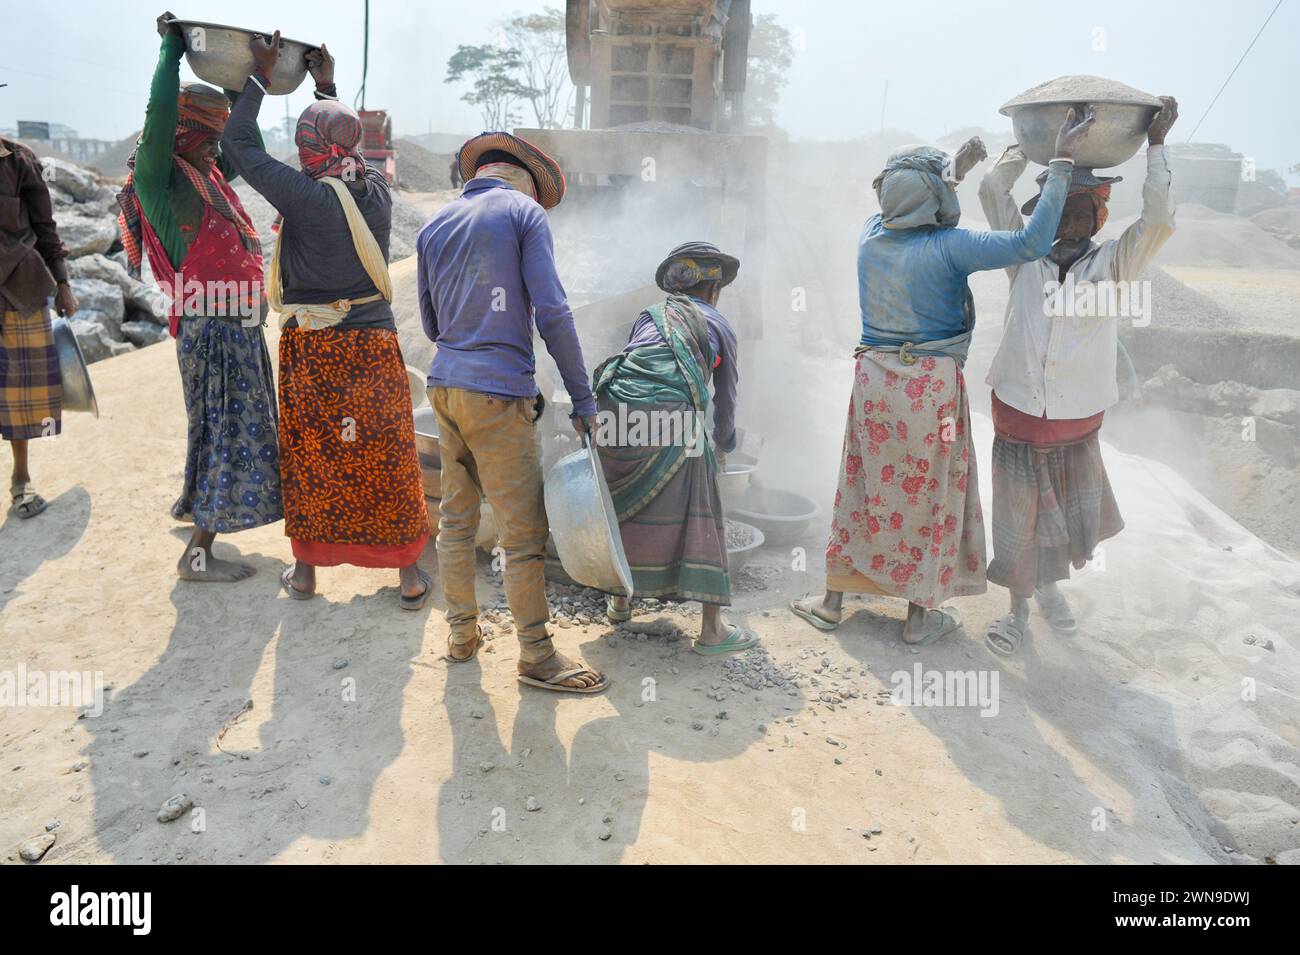 Männliche und weibliche Arbeiter brechen LC-Steine mit einer Brechmaschine in der Gegend von Bholaganj, bekannt als „Steinstaat“ von Sylhet Companyganj Upazila. Diese Arbeiter, deren Gesundheit gefährdet ist, verdienen am Ende des Tages 500-600 Taka. Rund 2000 Arbeiter sind in mehr als 200 Brechmaschinen beschäftigt, und jeden Tag werden Steine im Wert von 3-5 Mrd. Rupien gebrochen. Sylhet-Bangladesch. Stockfoto